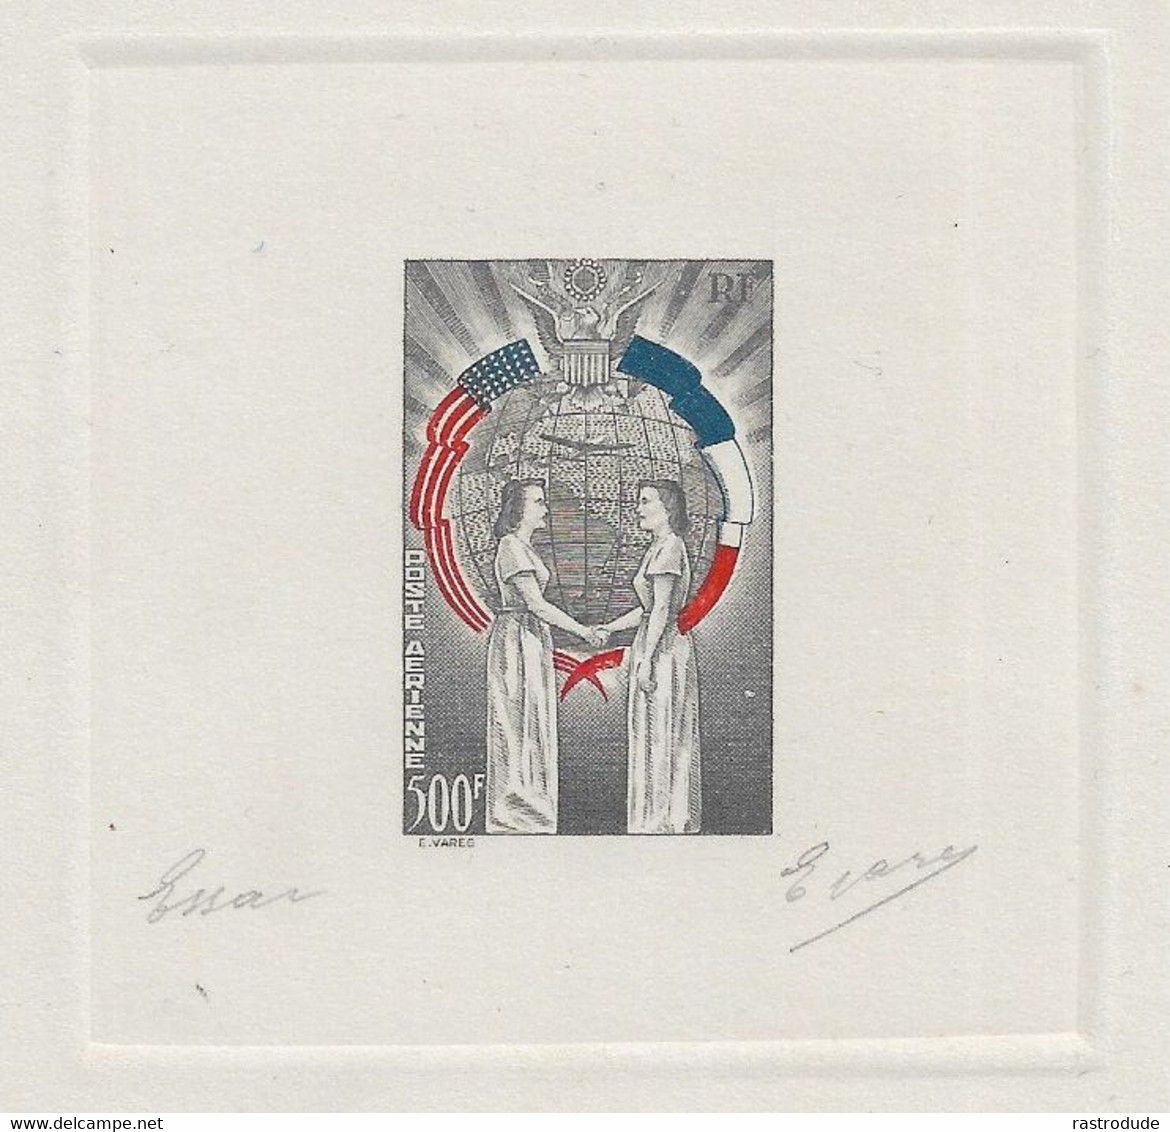 1949 FRANCE - TROIS COULEURS EPREUVE D'ARTISTE - NON EMIS -  L'AMITIÉ FRANCO-AMÉRICAINE SIGNE E.VARES - RARE - Artist Proofs